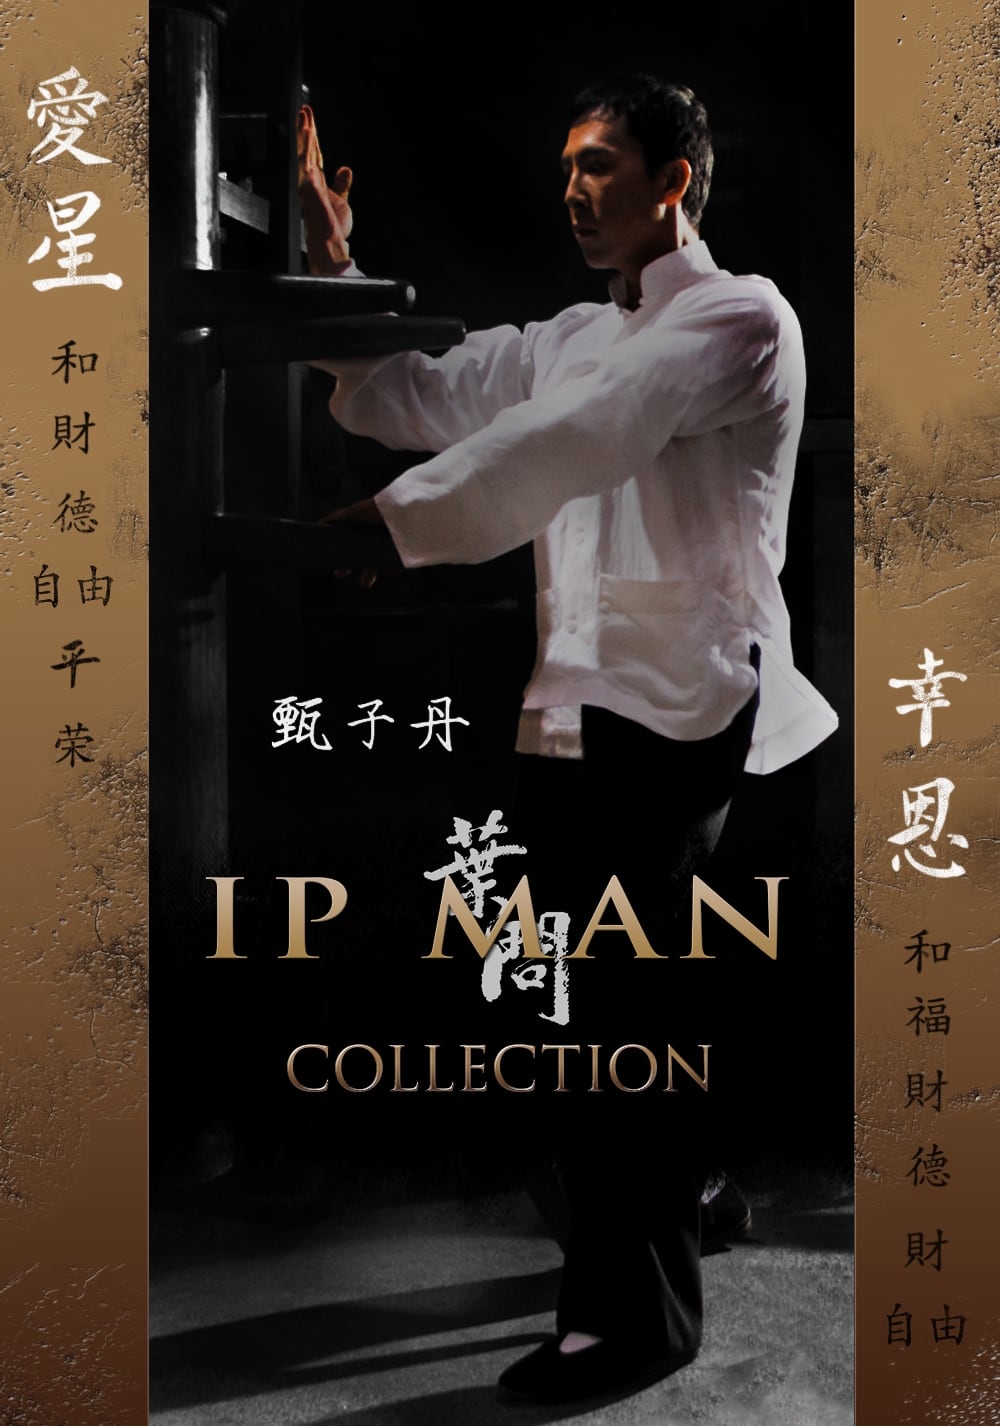 Fiche et filmographie de Ip Man Collection